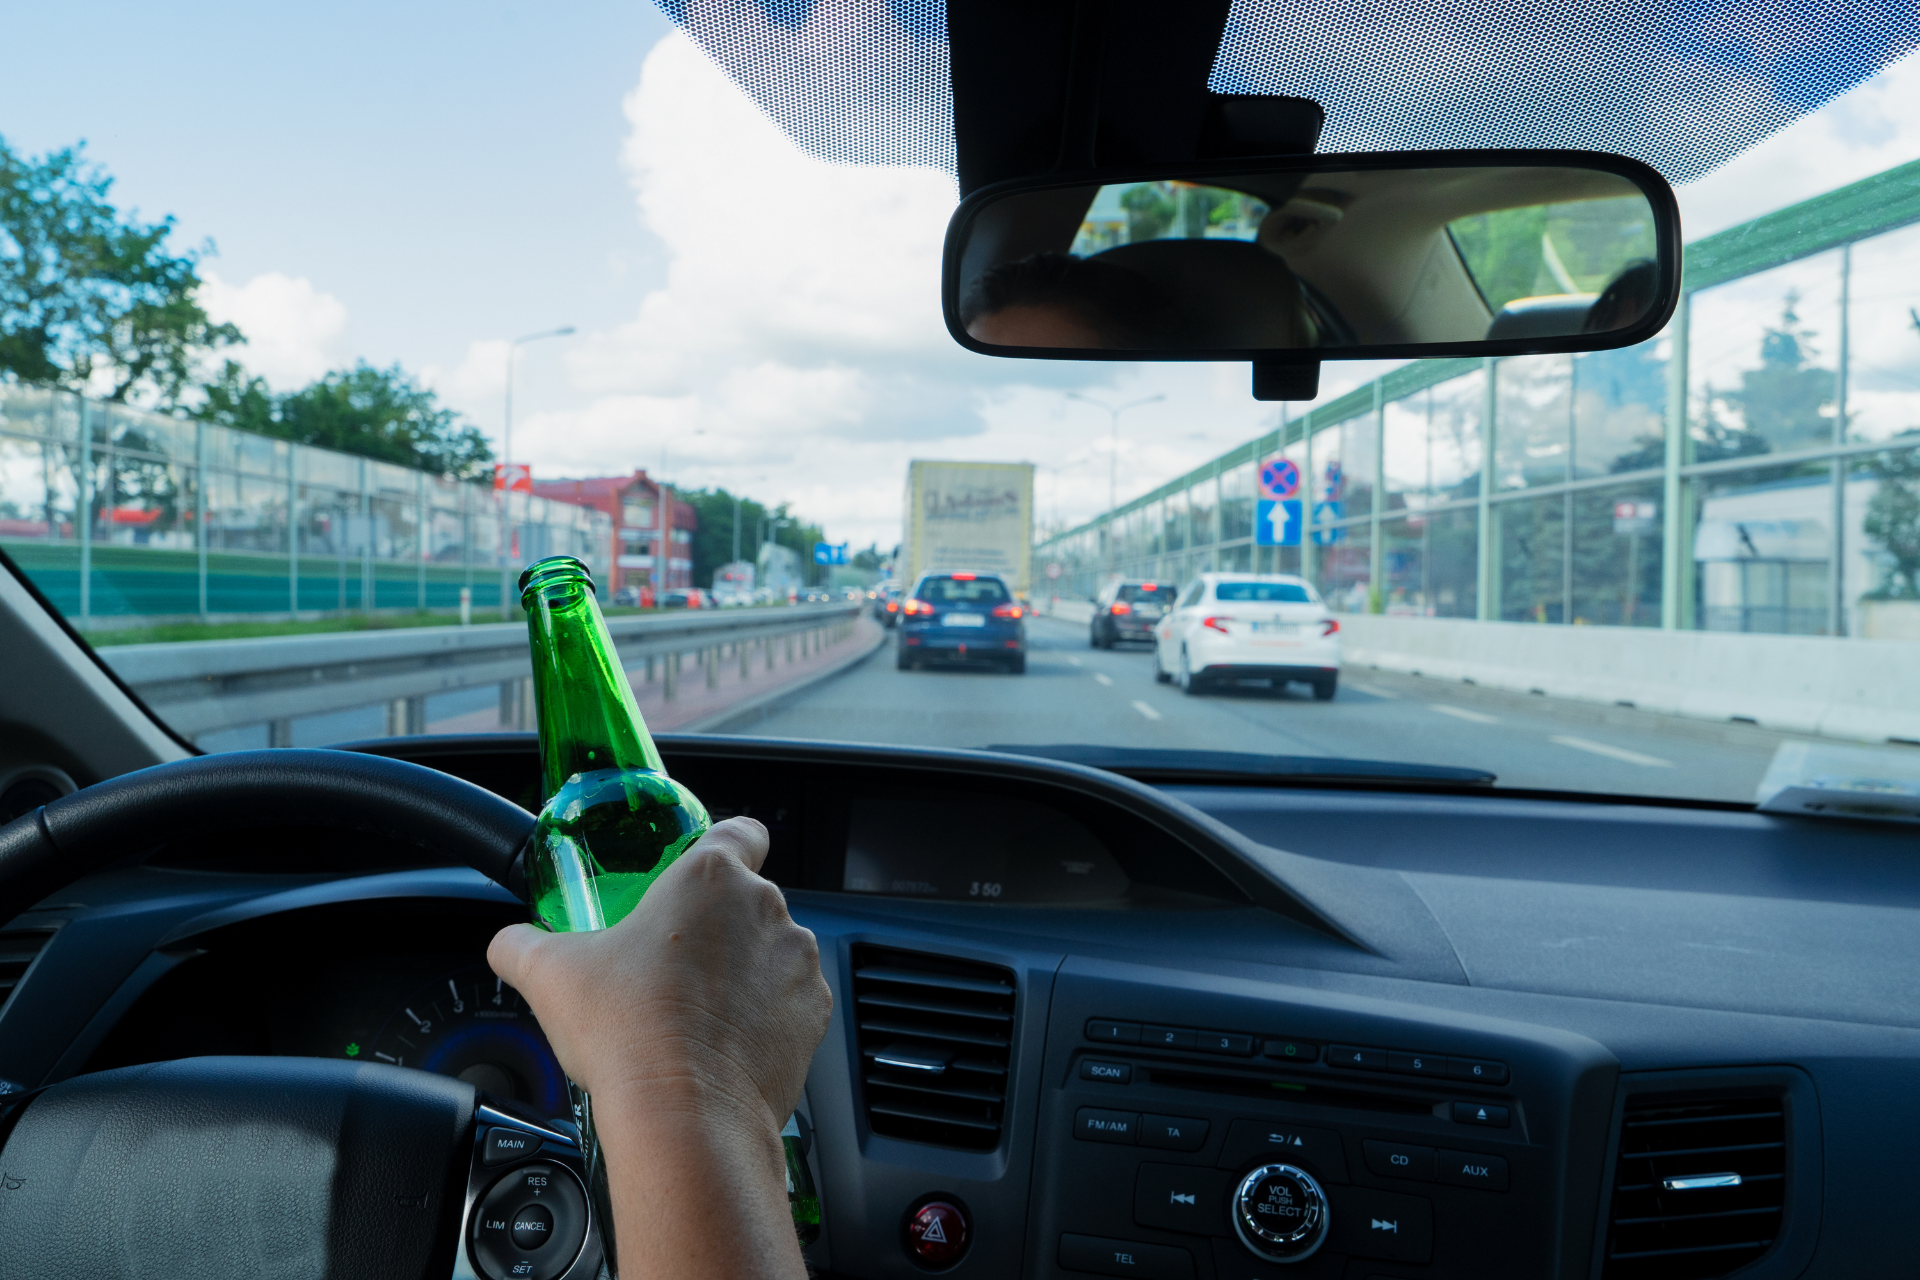 odzyskanie prawa jazdy po alkoholu Białystok